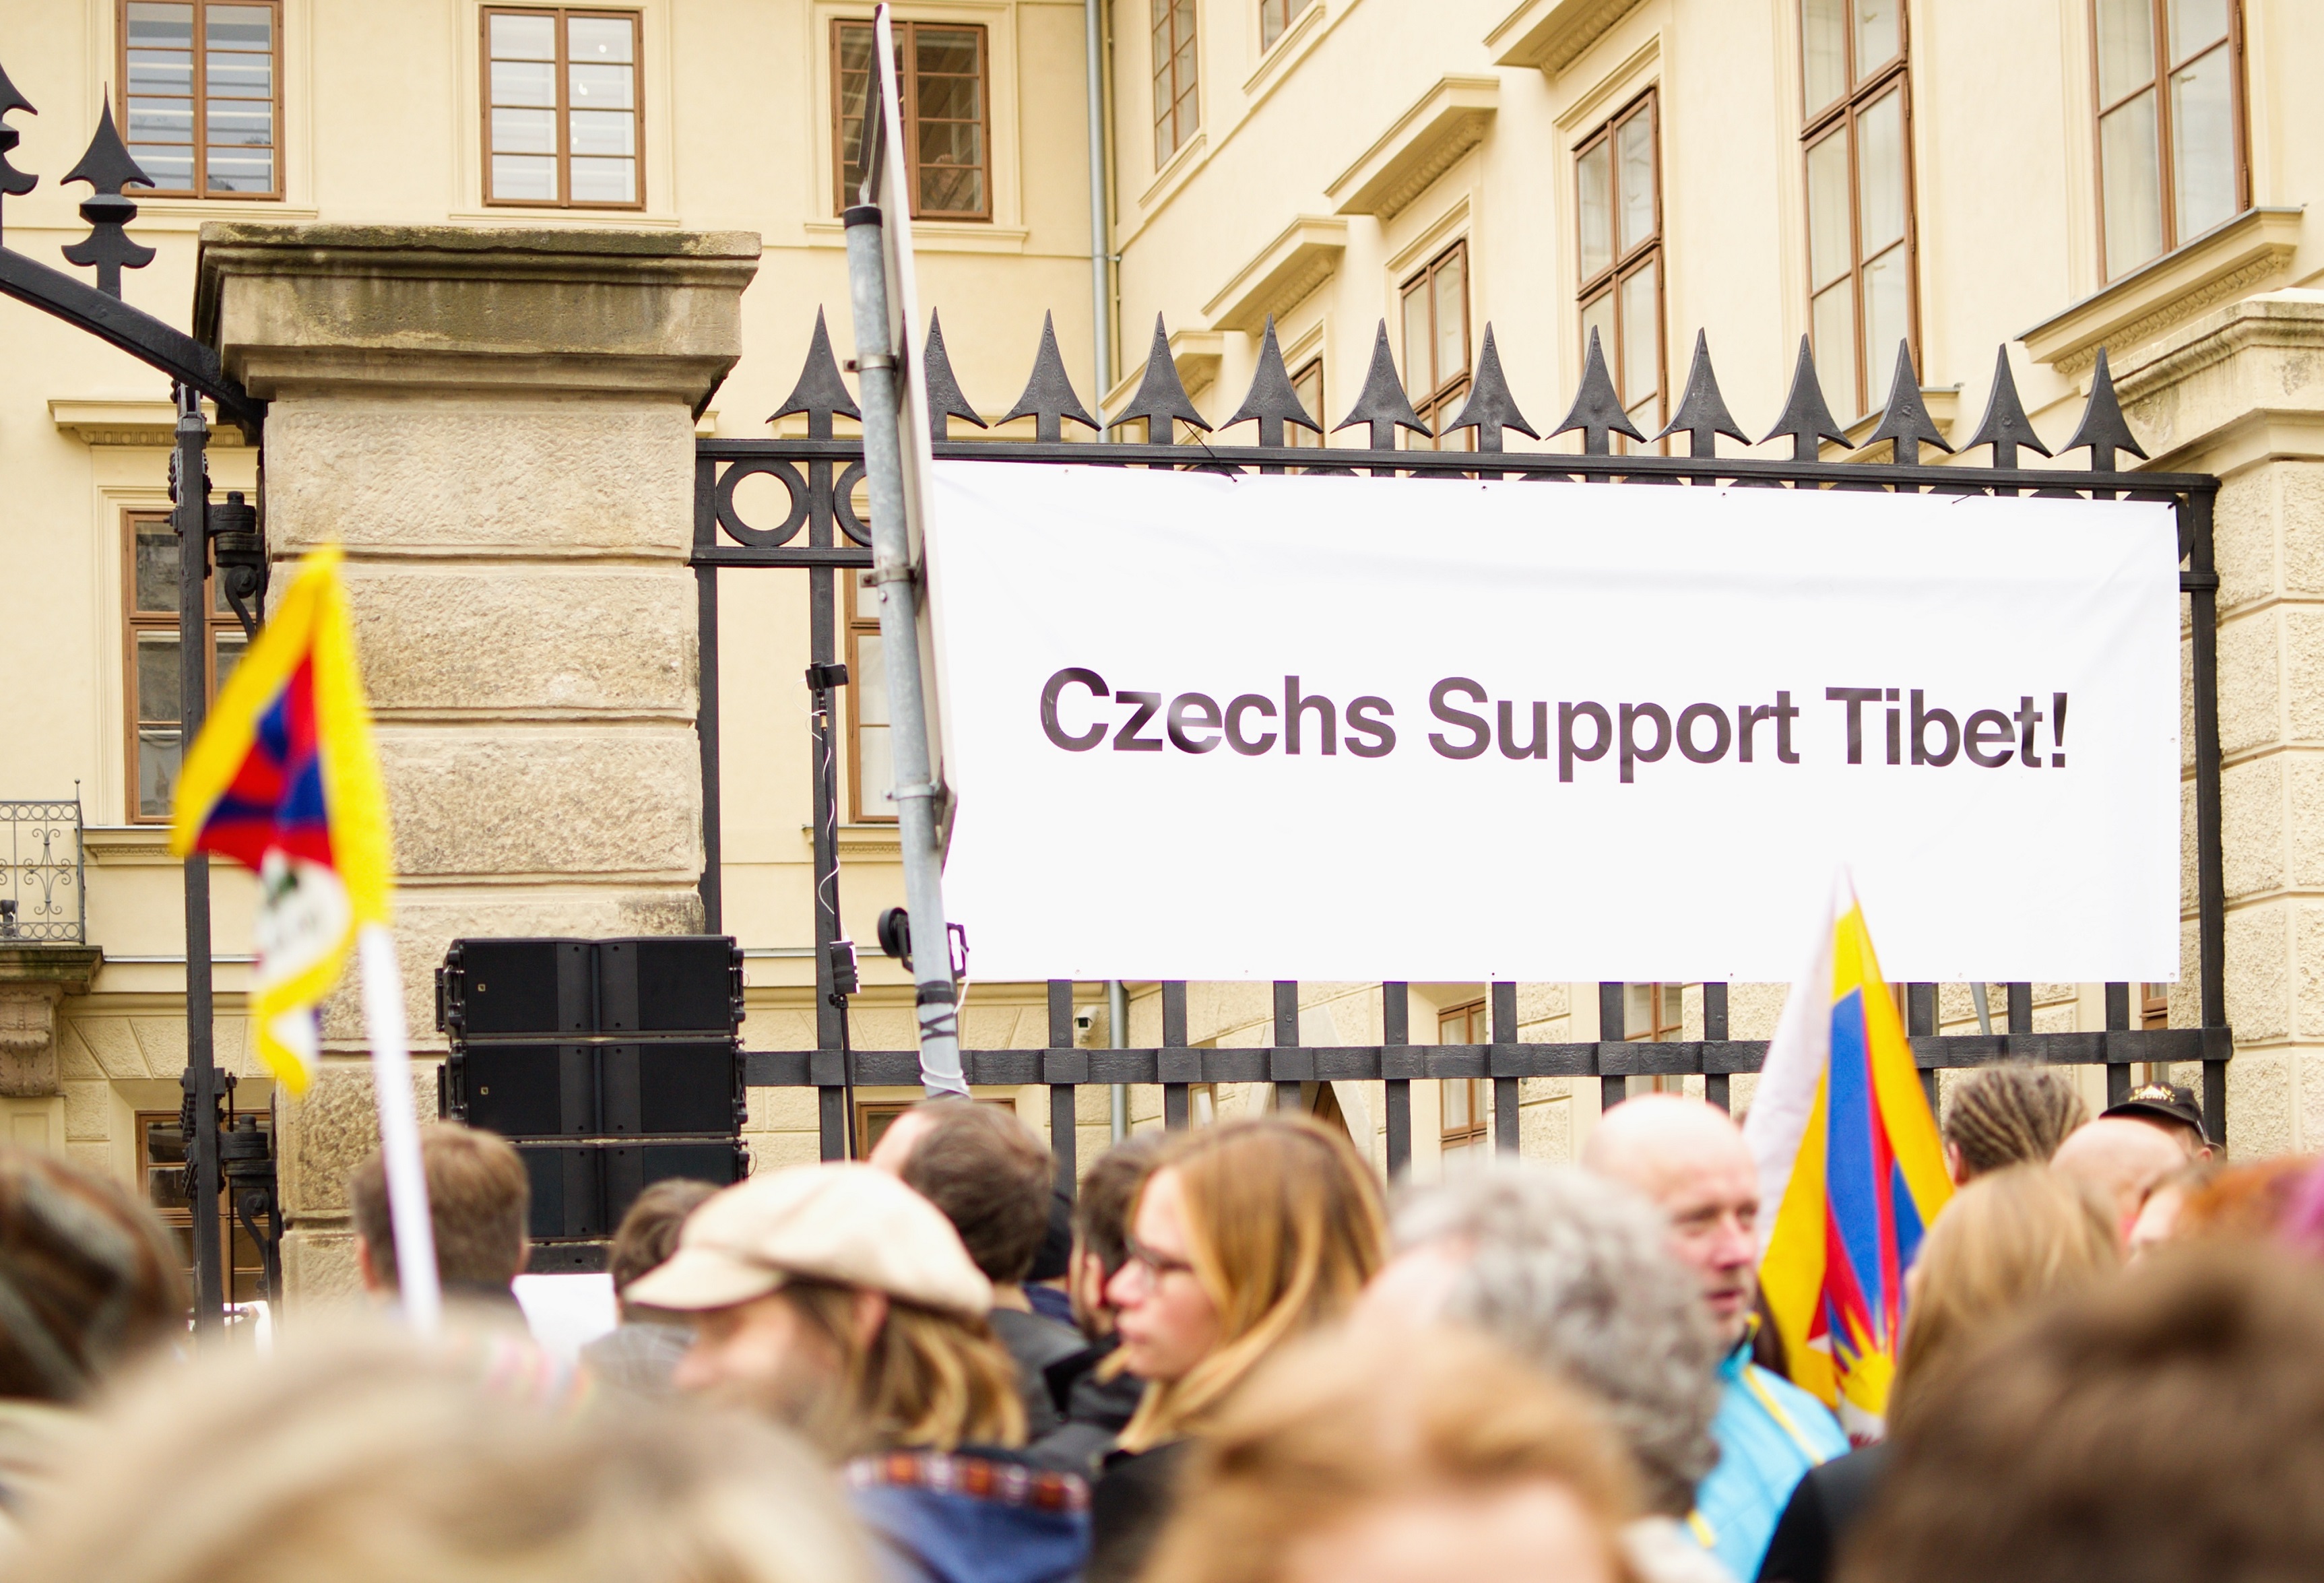 Nápis “Czechs Support Tibet” na plotu v blízkosti pódia